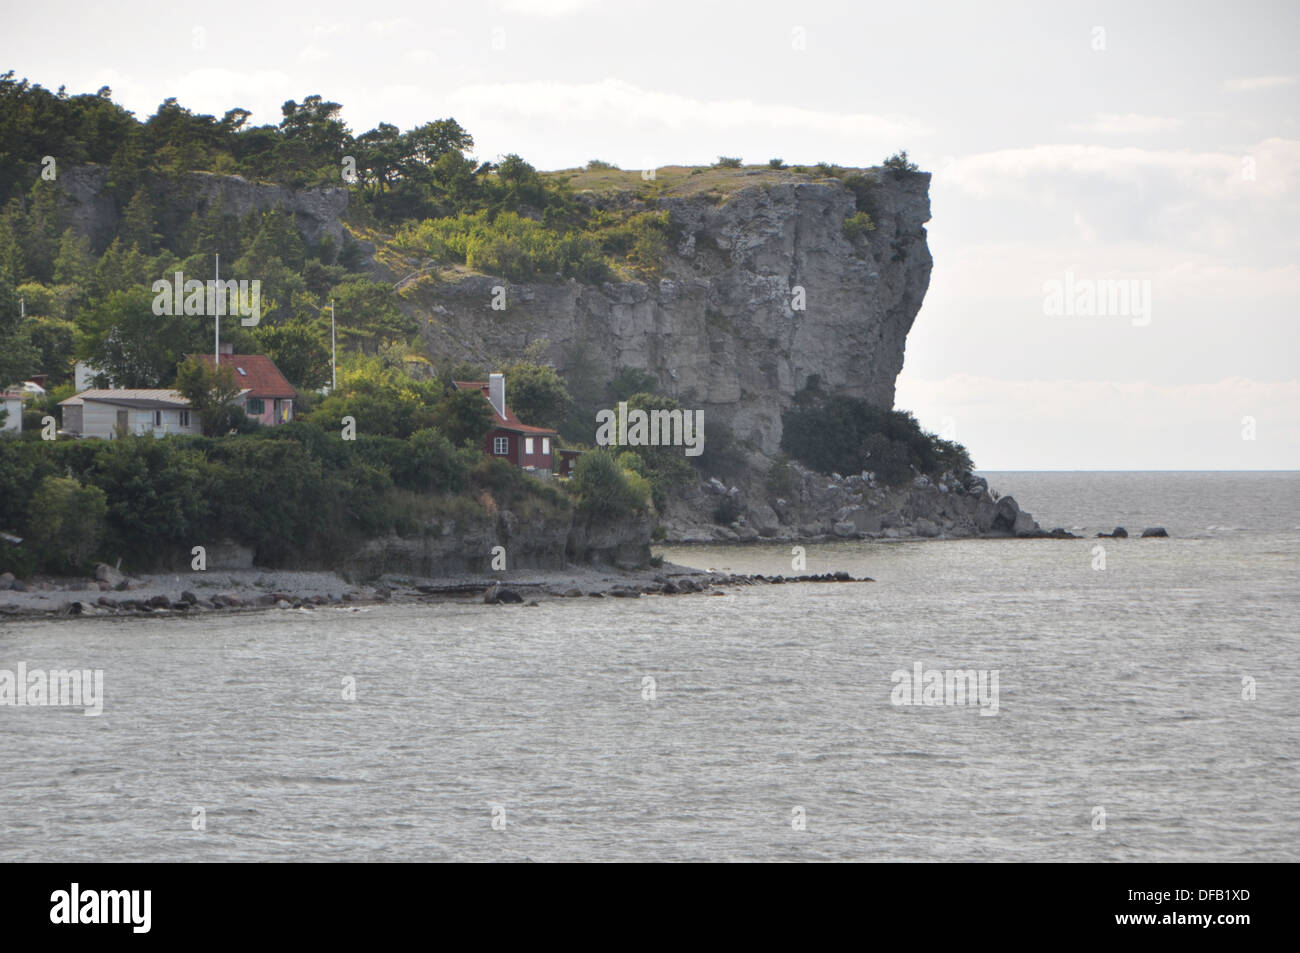 C'est la ligne de côte située au sud de Gotland Visby en Suède. Le nom de l'endroit est Högklint. Banque D'Images